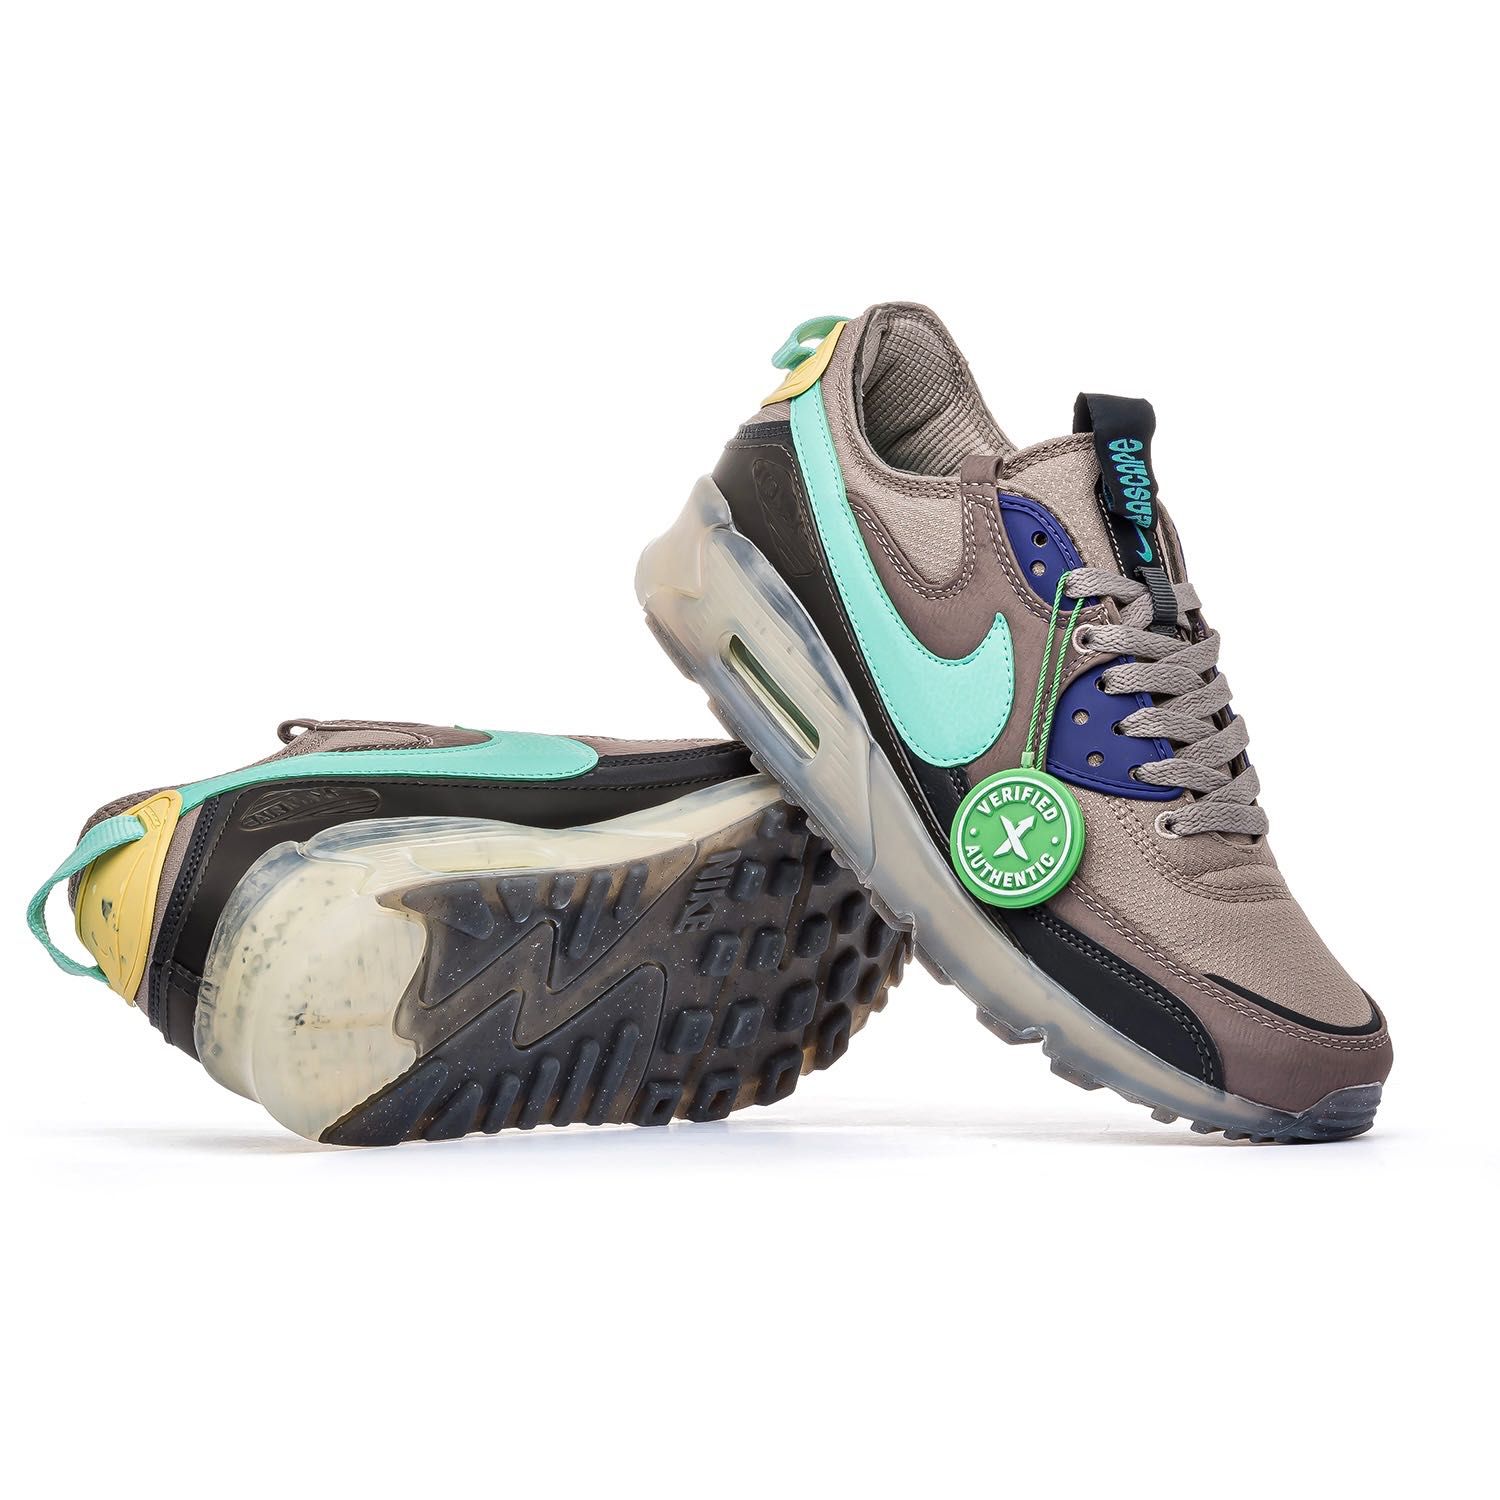 Мужские кроссовки Nike Air Max 90 x Terrascape Brown. Размеры 41-45